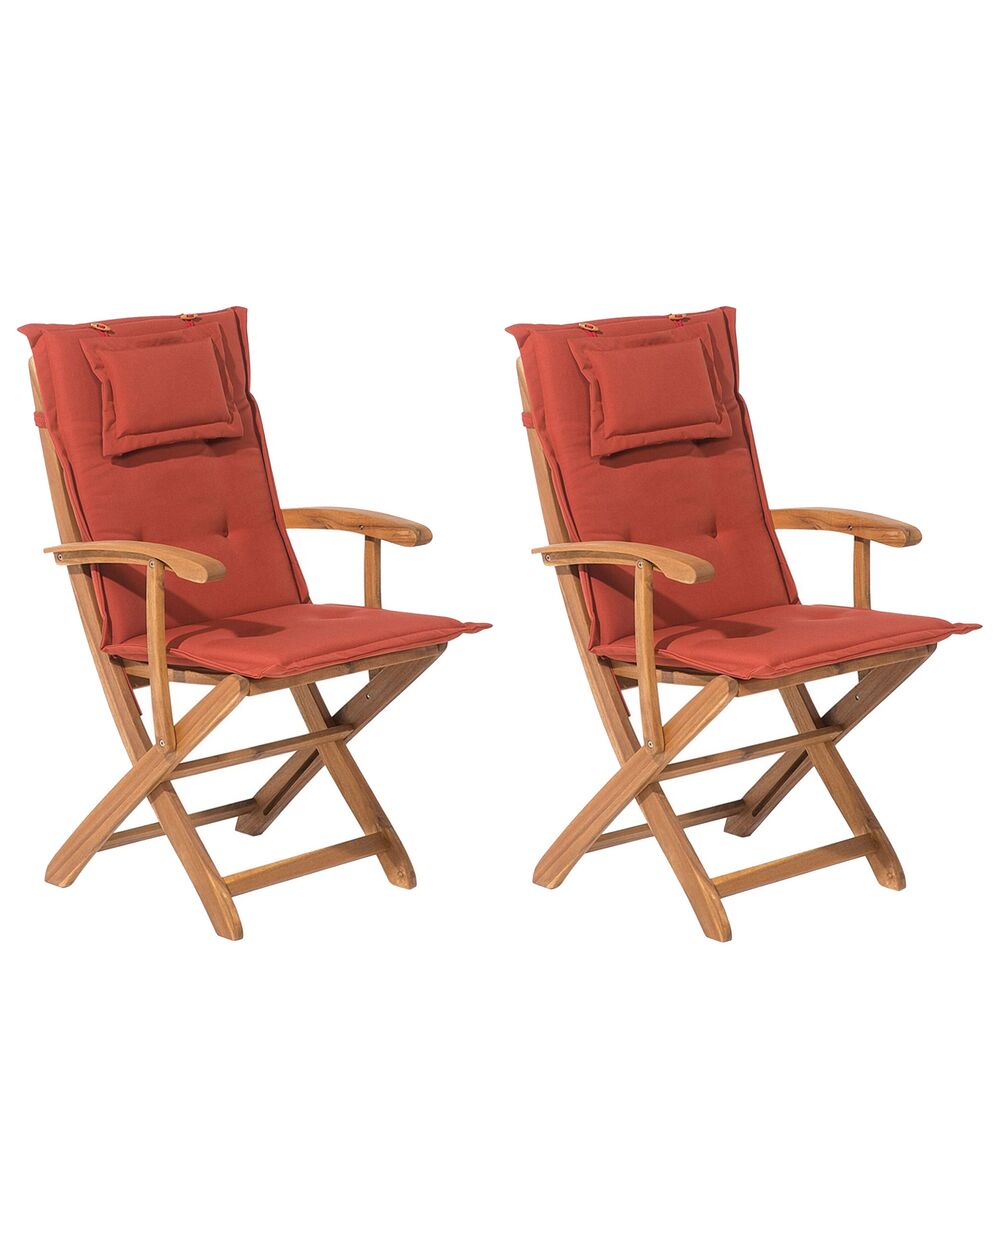 Set de 8 coussins en tissu rouge bordeaux pour chaises de jardin MAUI